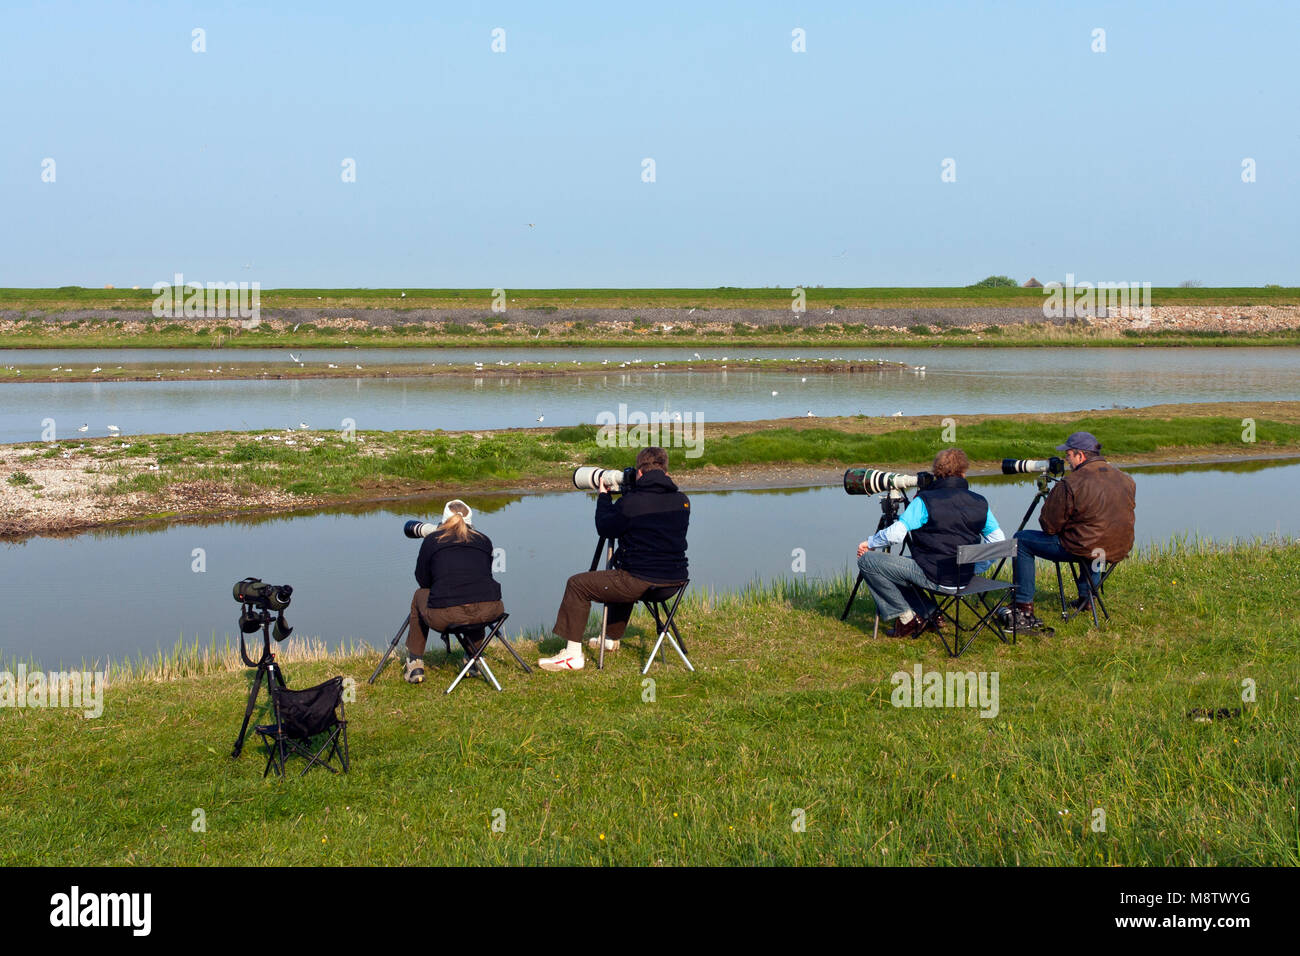 Vogelfotografen bij het Wagenjot ; vogel Fotografen an Wagenjot, Texel (Niederlande) Stockfoto